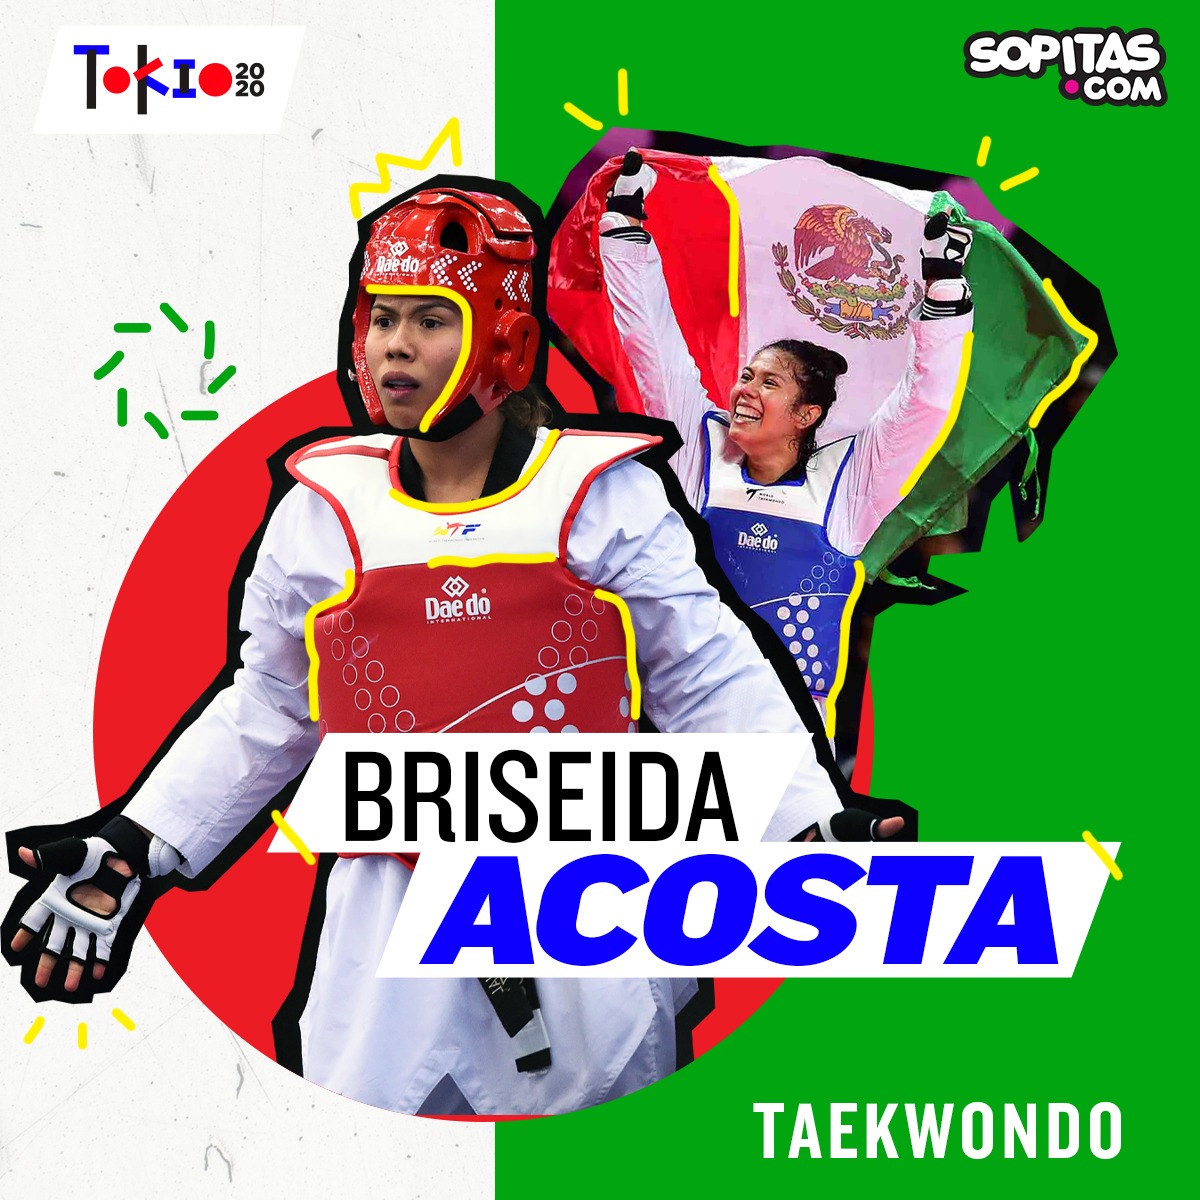 Briseida Acosta en Tokio 2020